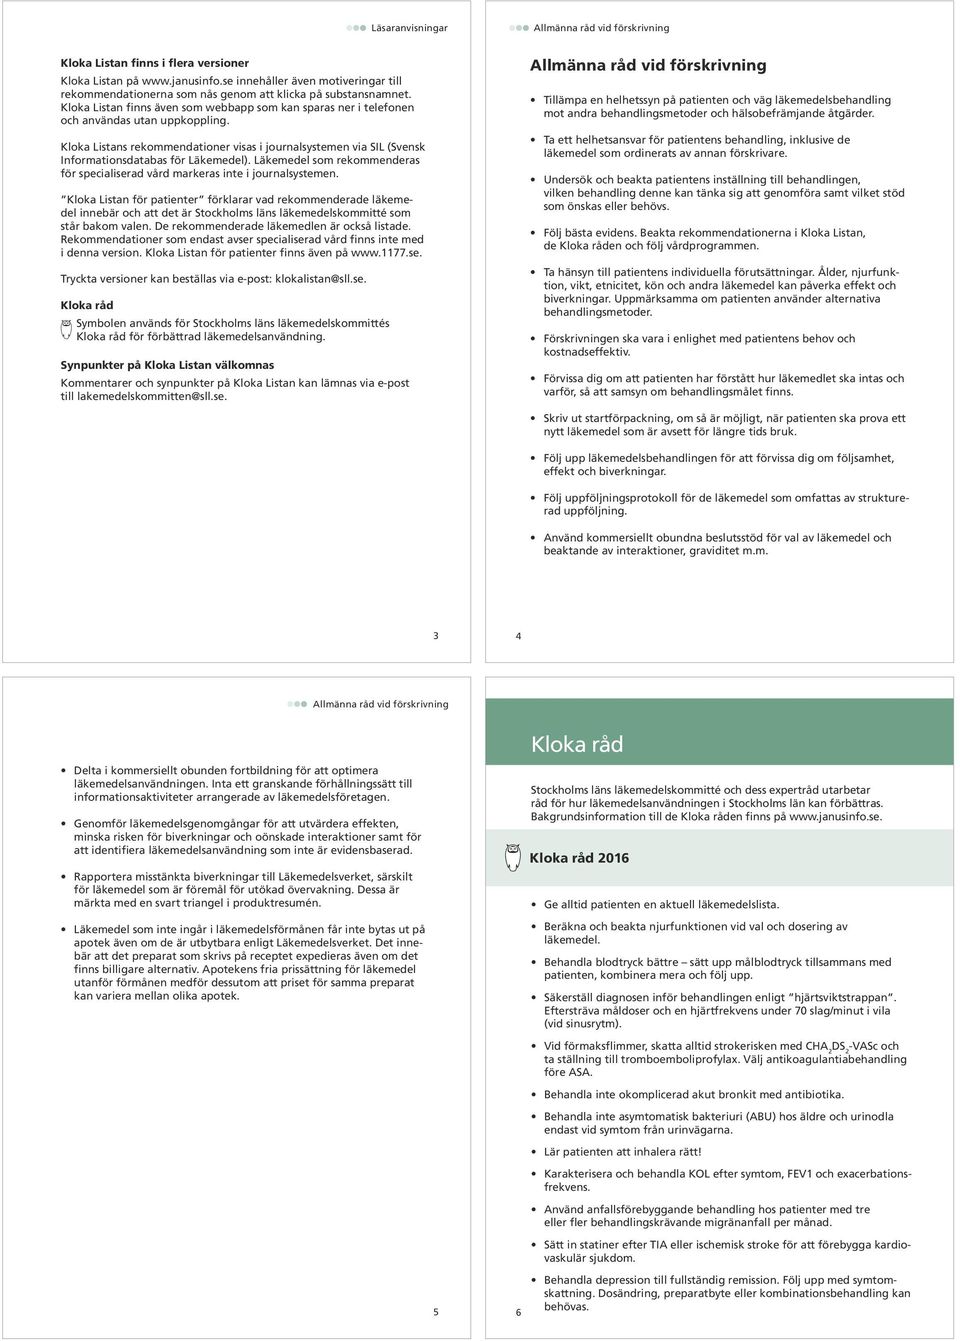 Kloka Listans rekommendationer visas i journalsystemen via SIL (Svensk Informationsdatabas för Läkemedel). Läkemedel som rekommenderas för specialiserad vård markeras inte i journalsystemen.